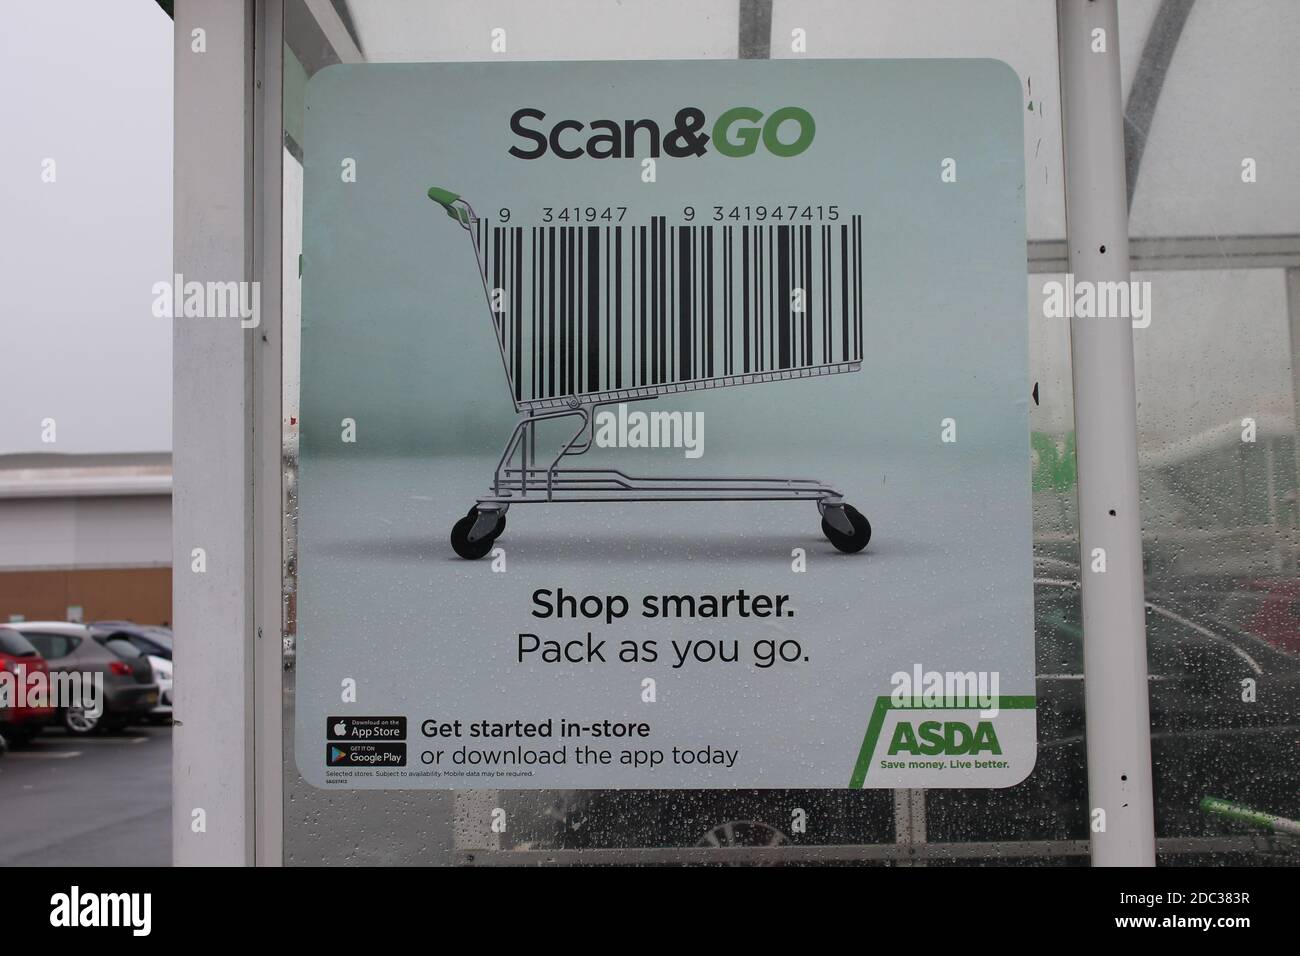 Scannen und gehen Sie intelligenter einkaufen, packen, wie Sie gehen Zeichen mit einem Einkaufswagen Barcode Stockfoto